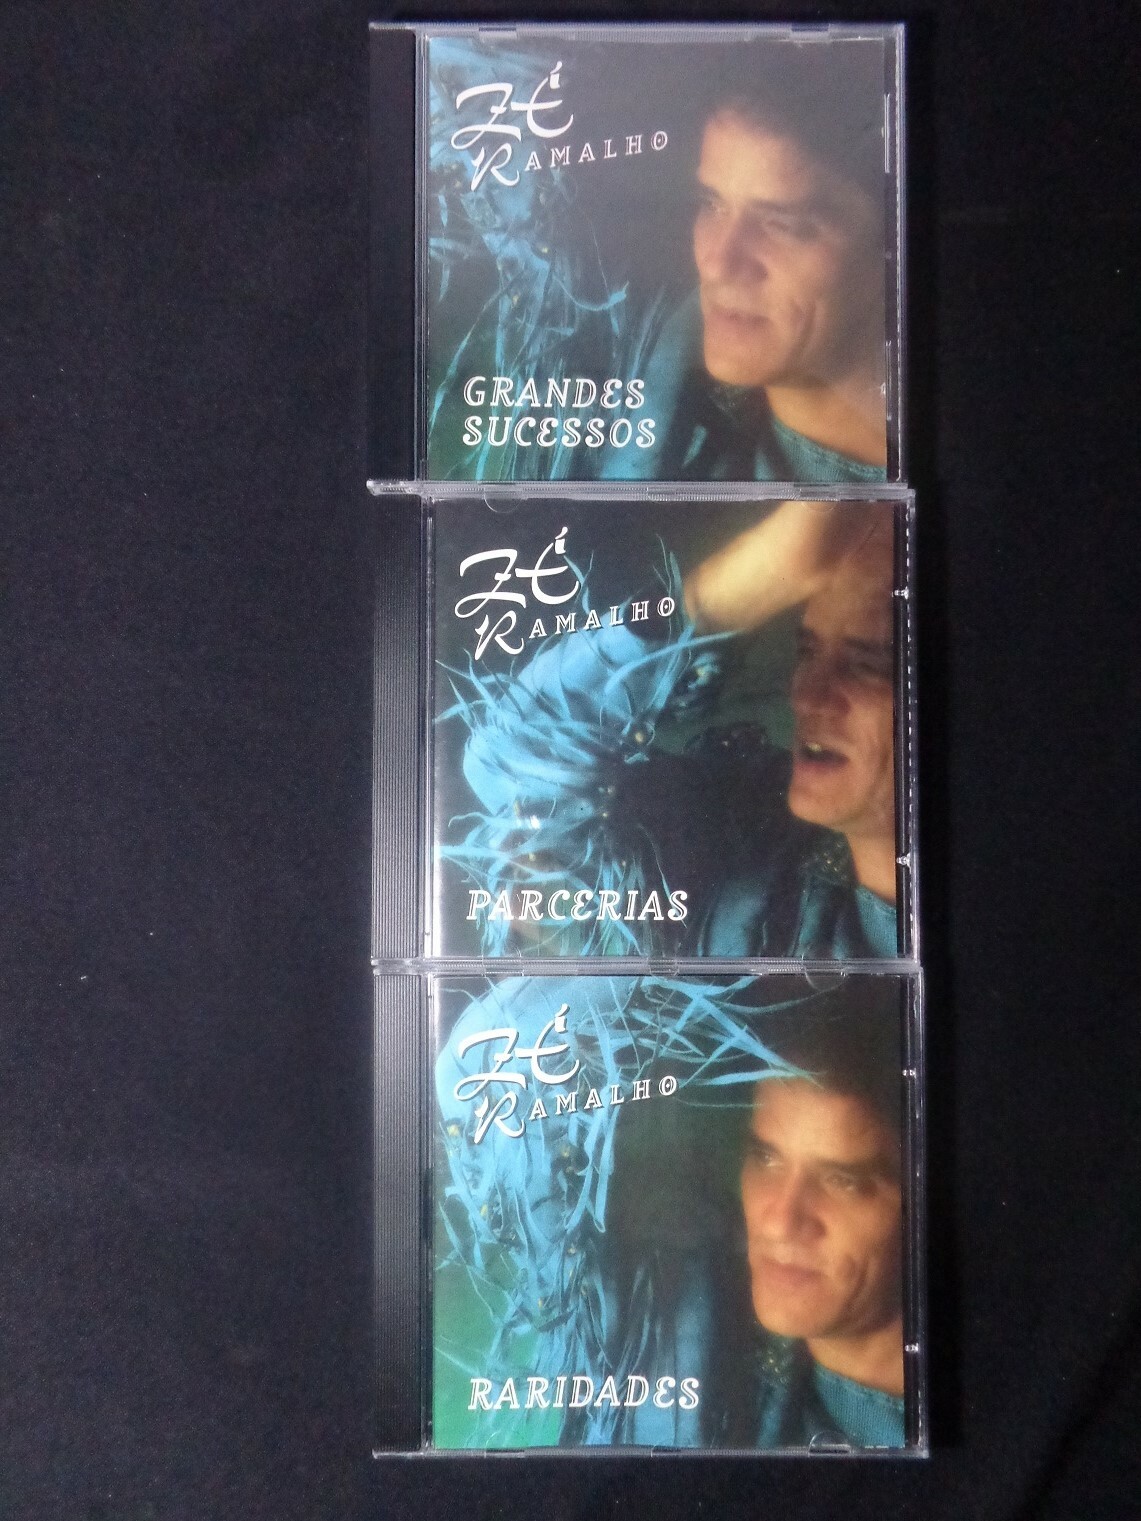 CD - Zé Ramalho - 20 Anos de Carreira (Box 3 CDs)